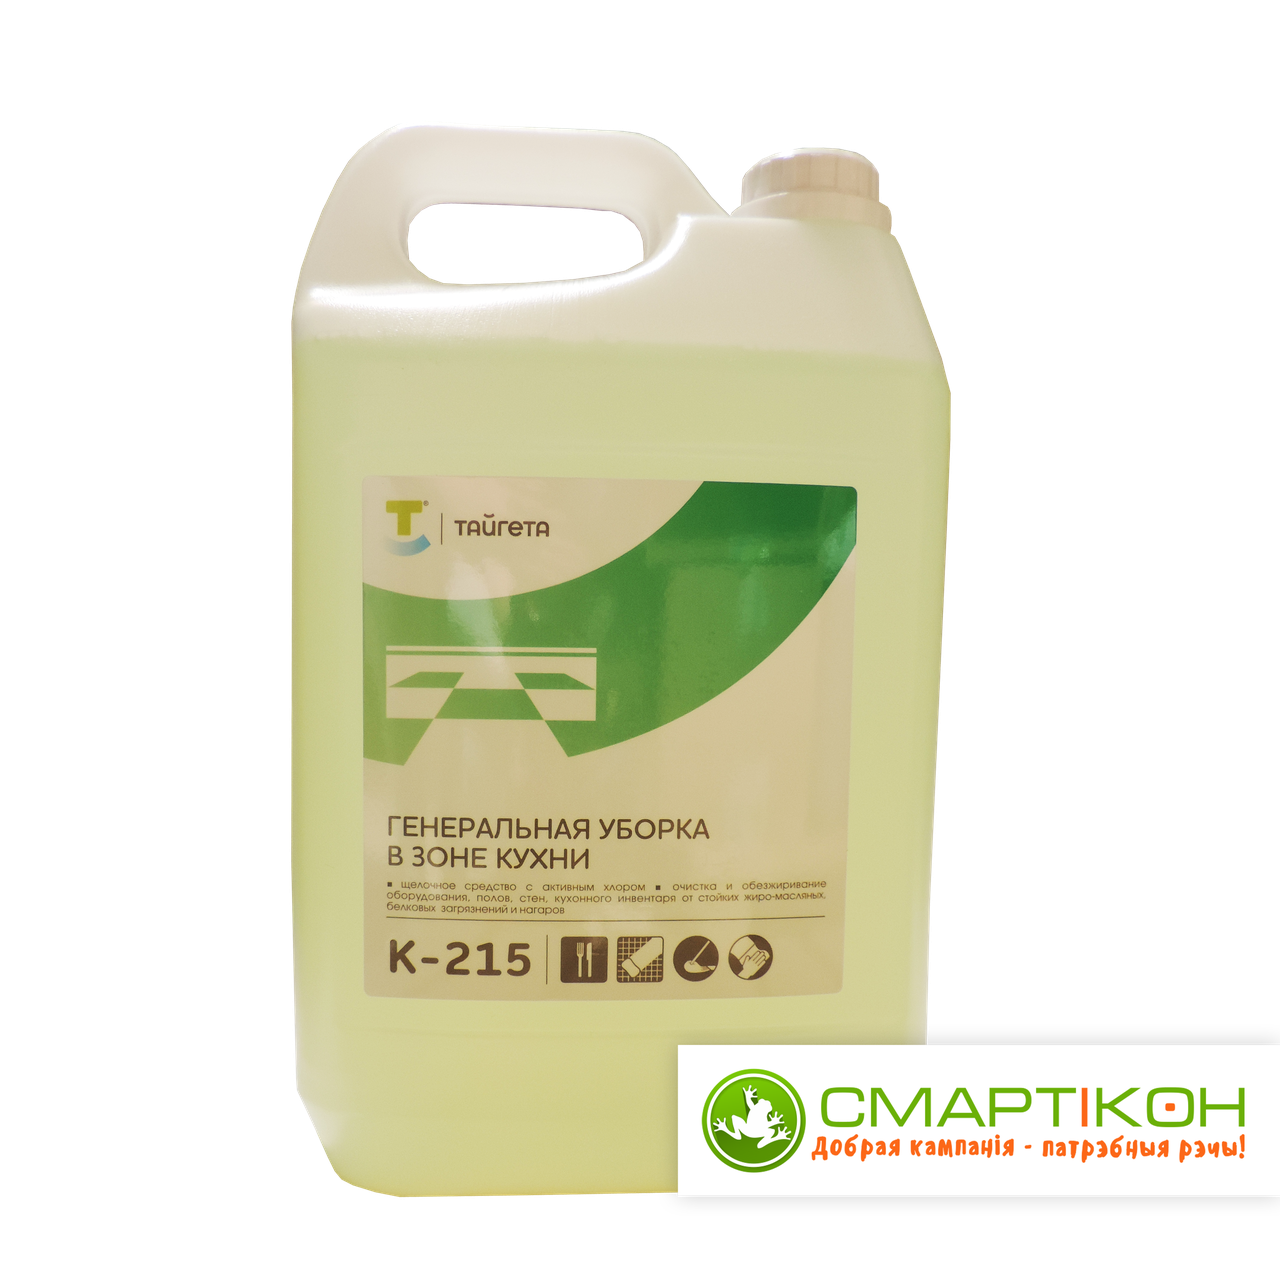 Хлорсодержащее щелочное средство Тайгета К215 (SafeLink) для ген. уборки на кухне.